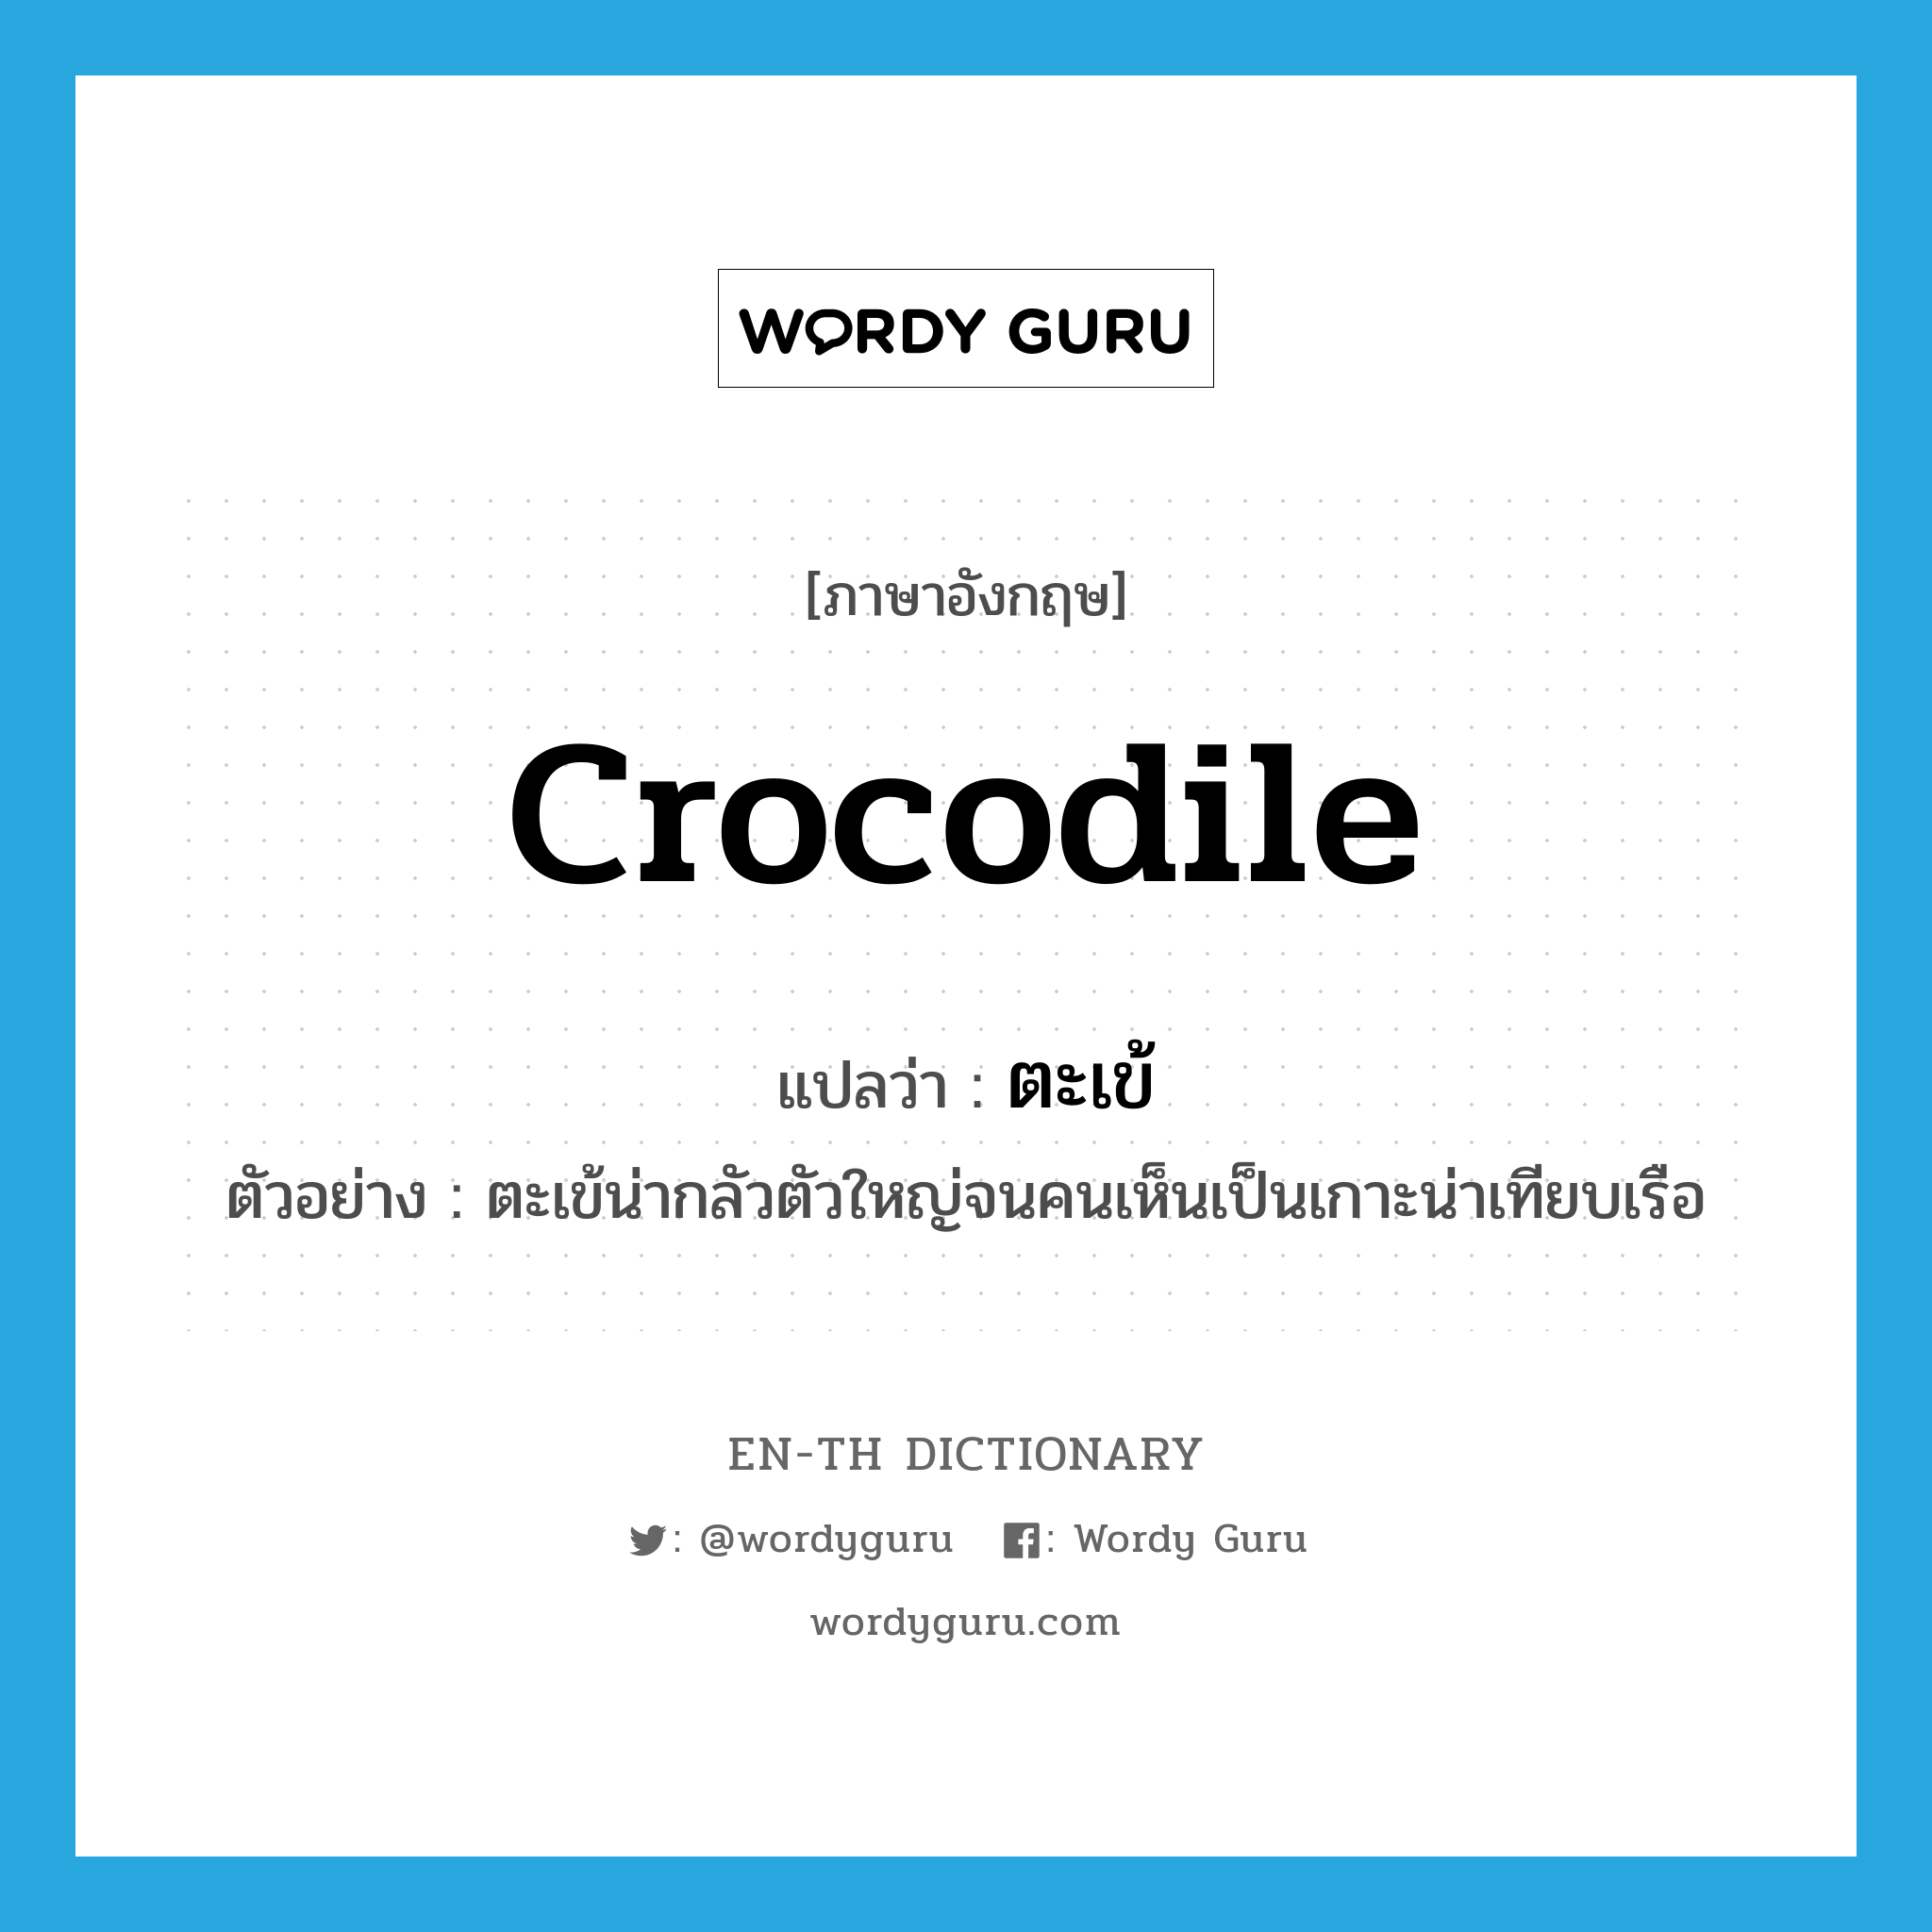 crocodile แปลว่า?, คำศัพท์ภาษาอังกฤษ crocodile แปลว่า ตะเข้ ประเภท N ตัวอย่าง ตะเข้น่ากลัวตัวใหญ่จนคนเห็นเป็นเกาะน่าเทียบเรือ หมวด N